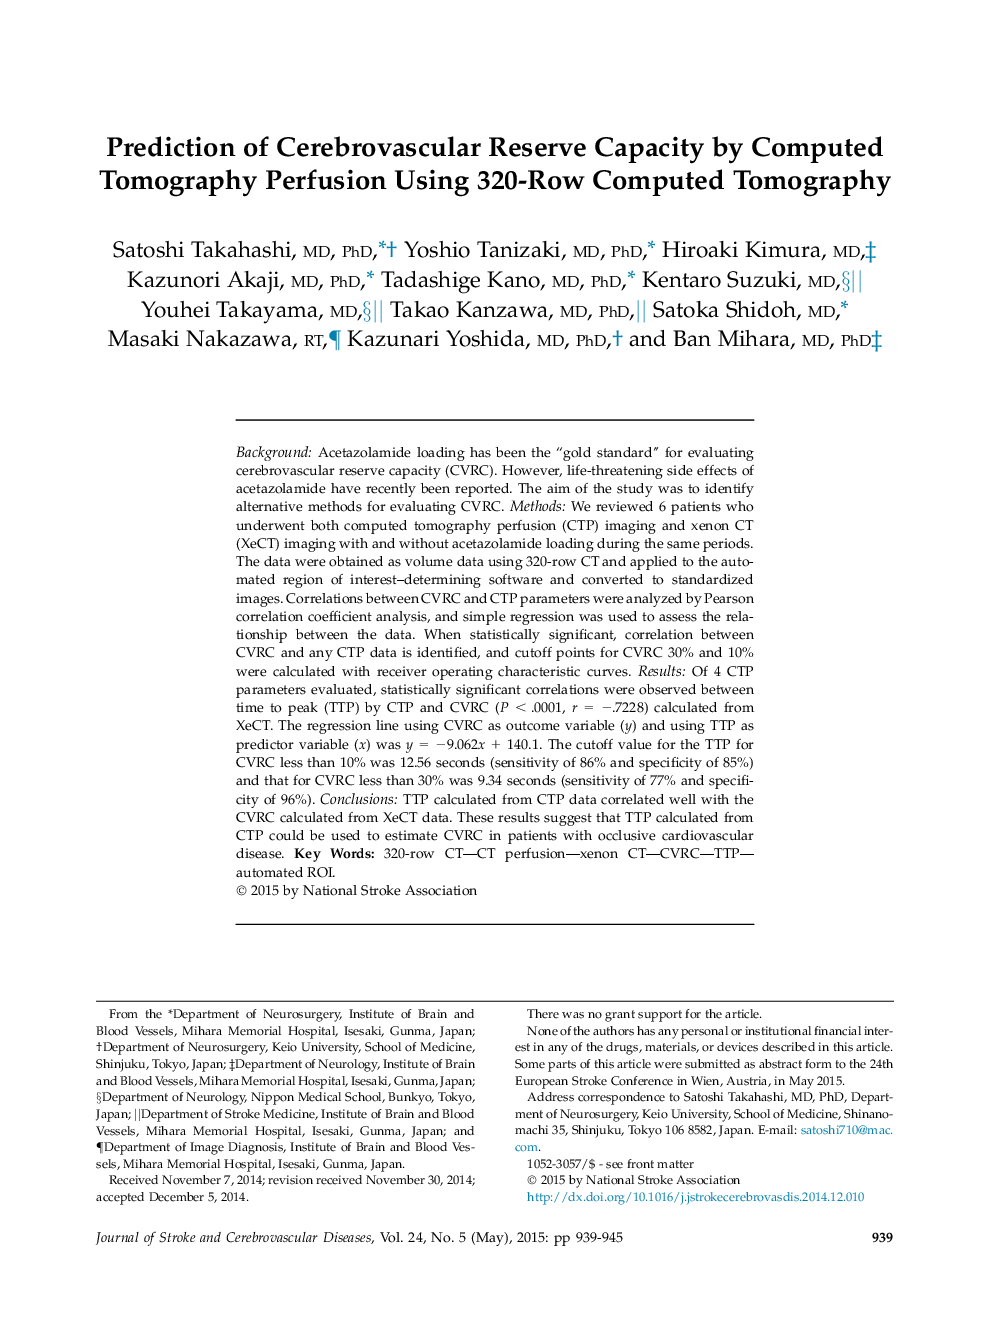 پیش بینی ظرفیت ذخایر مغزی با استفاده از توموگرافی کامپیوتری با استفاده از توموگرافی کامپیوتری 320 ردیف 